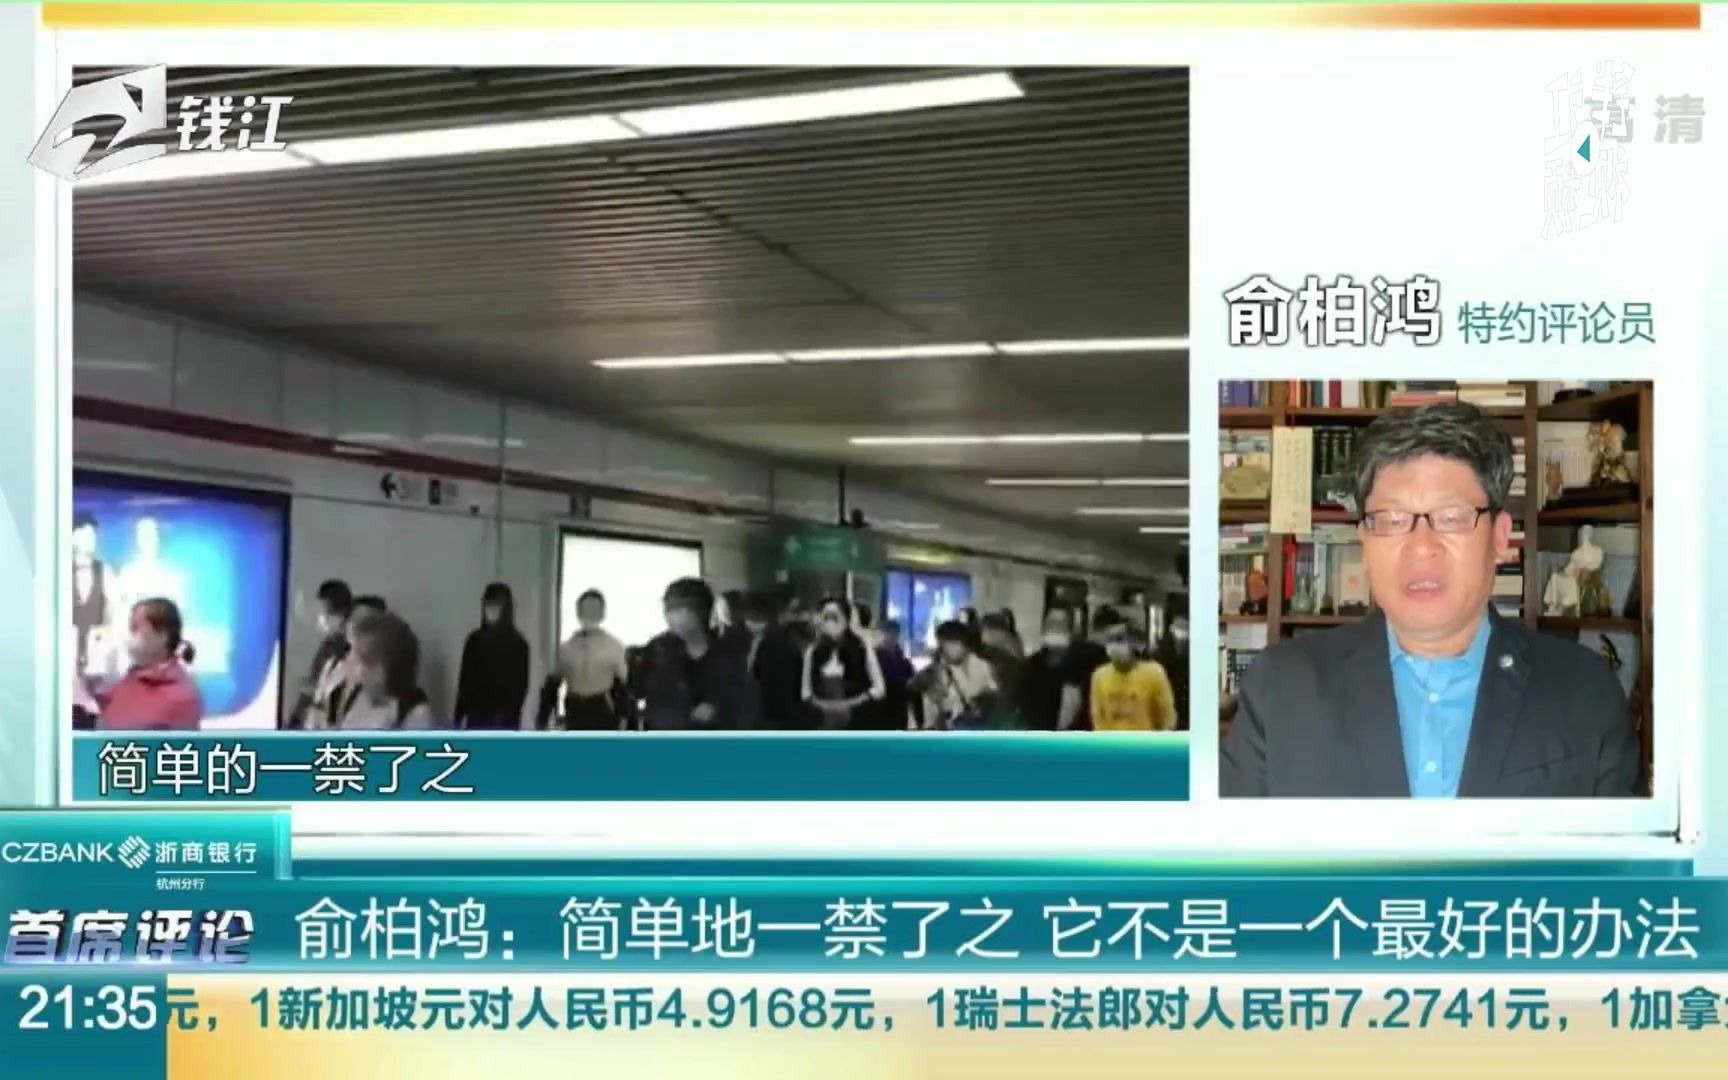 上海地铁“禁止手机外放”的实施 俞柏鸿表示：简单一禁了之 并不是最好的办法